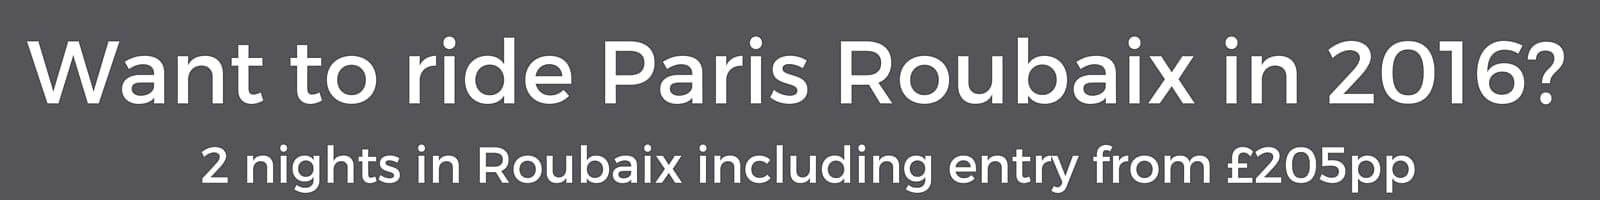 Paris Roubaix Banner